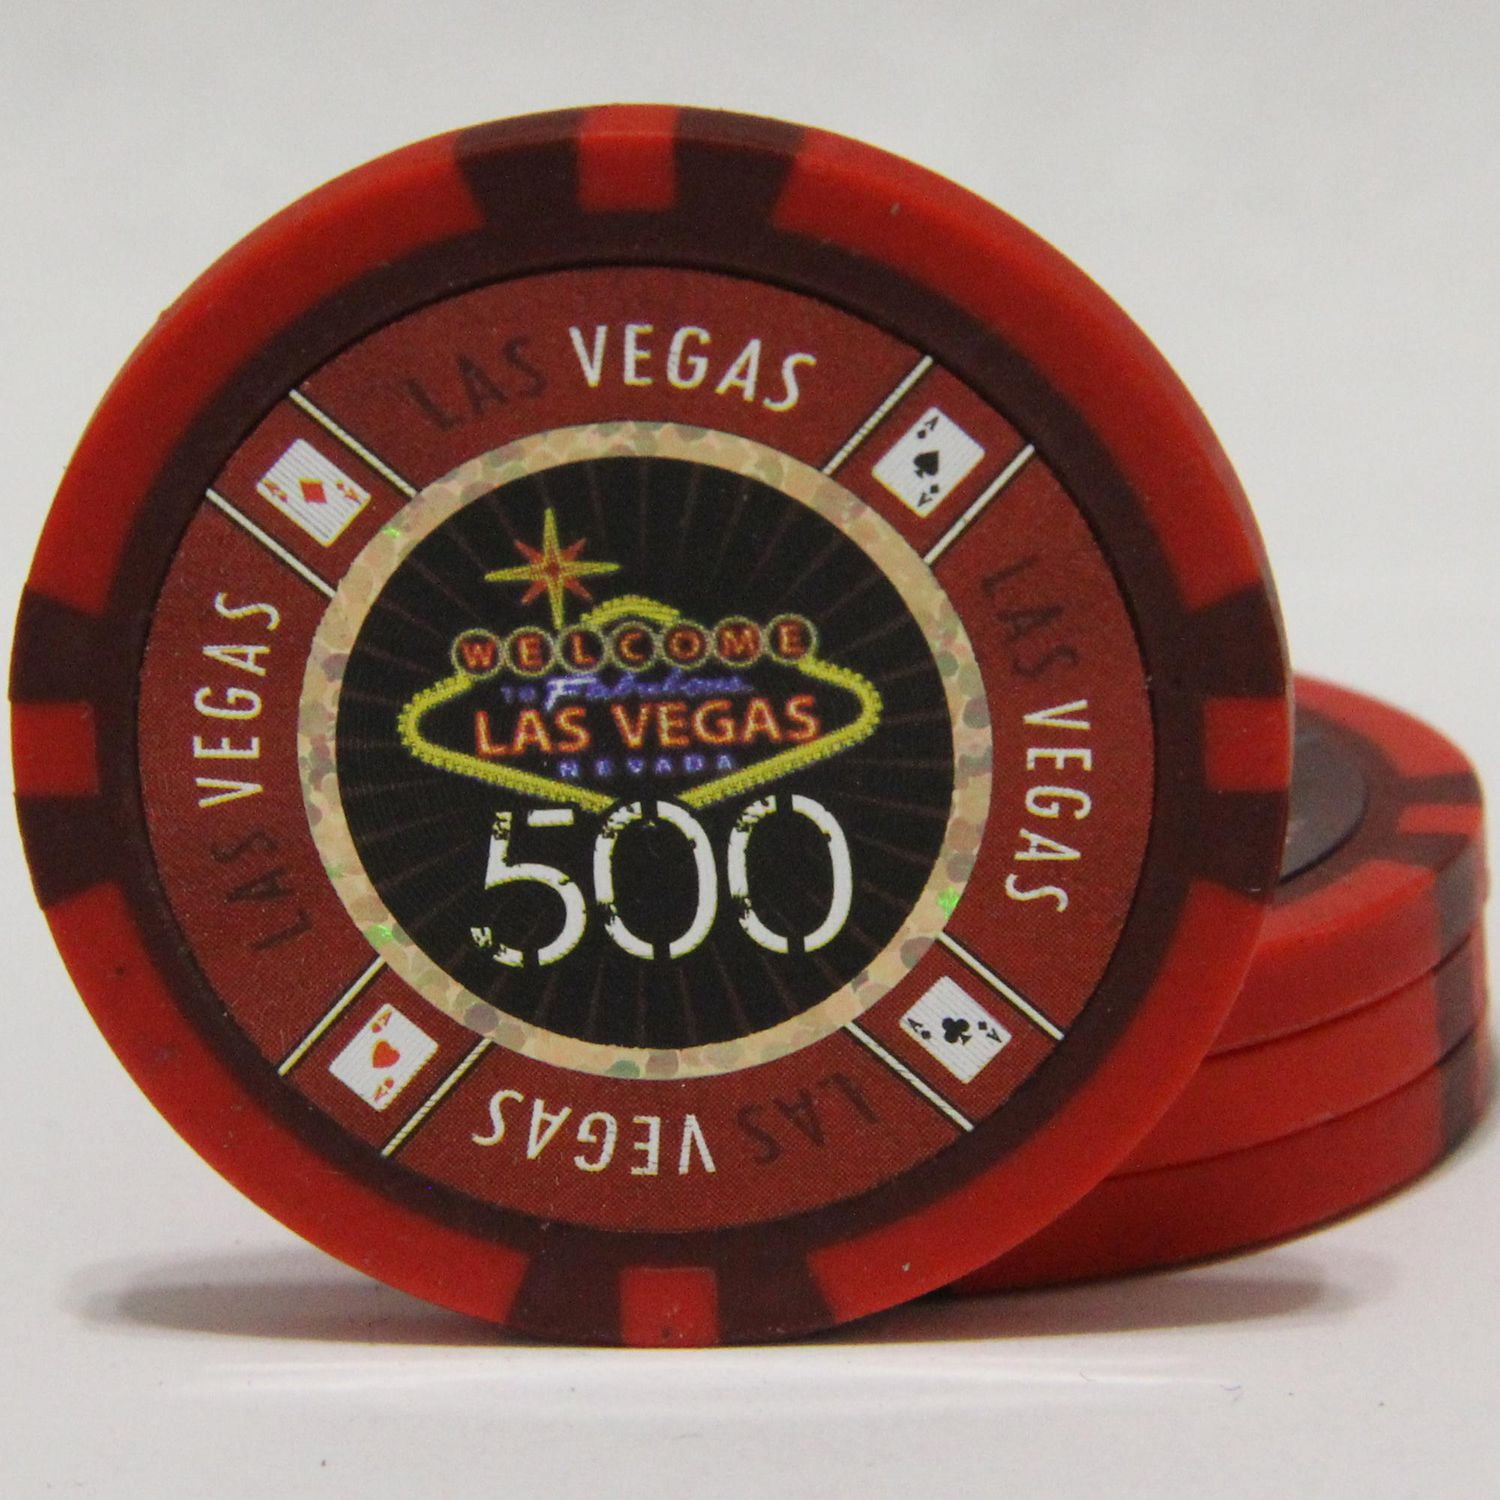 LAS VEGAS Leggings Poker Blackjack Chips Casino Martini - Multiple Sizes  POCKETS